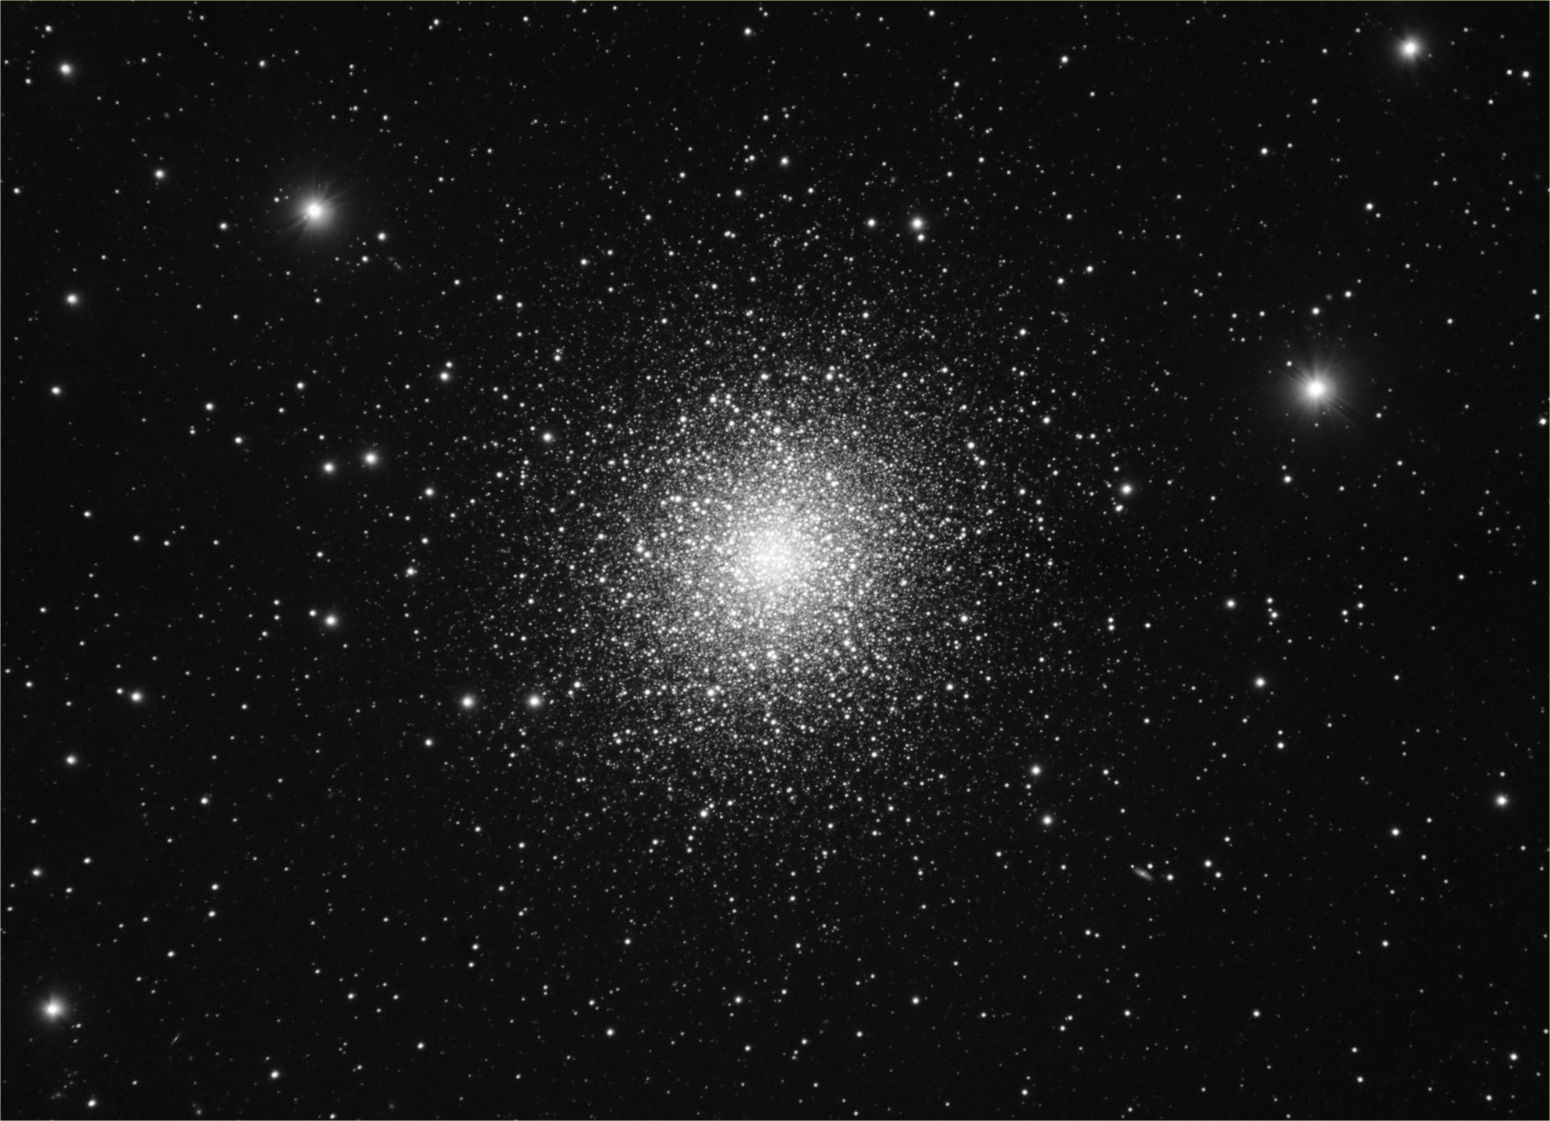 Hercules Globular Cluster - M13